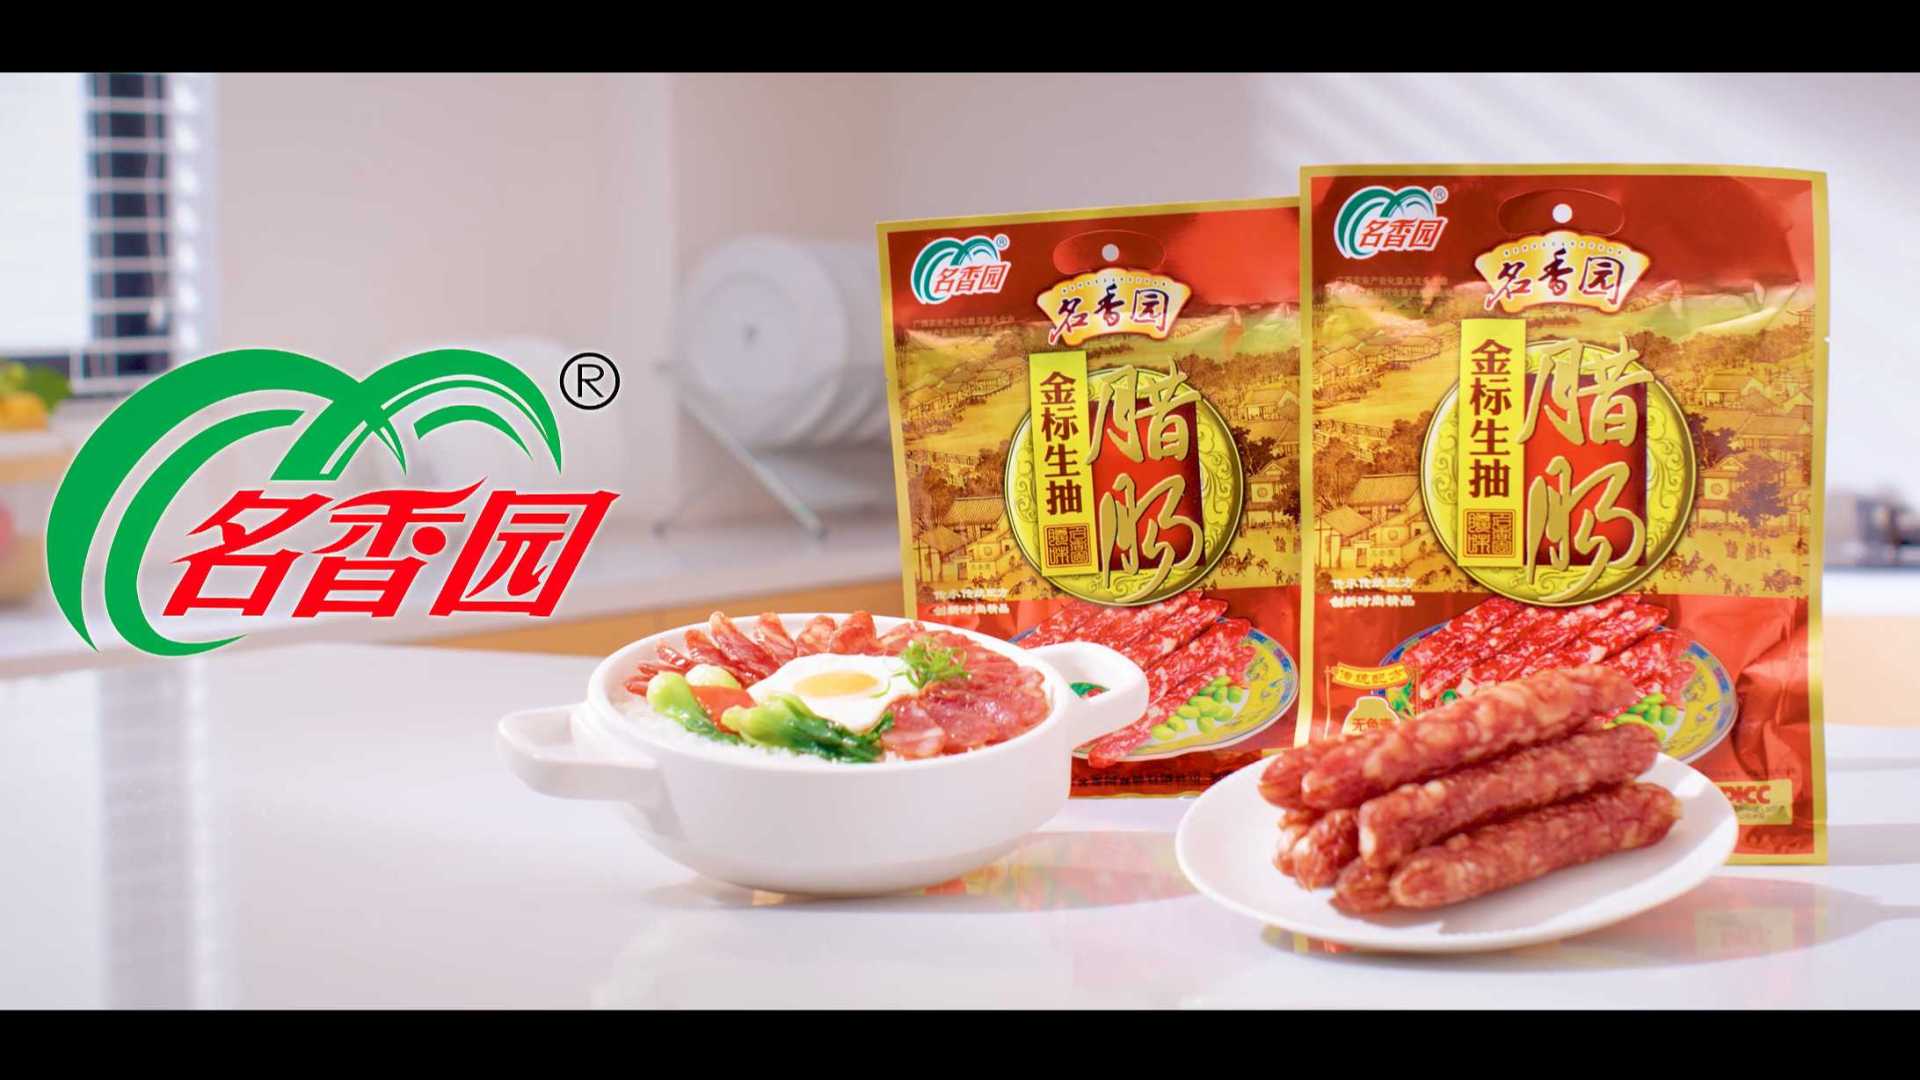 广西名香园系列产品广告--名香园金牌腊肠